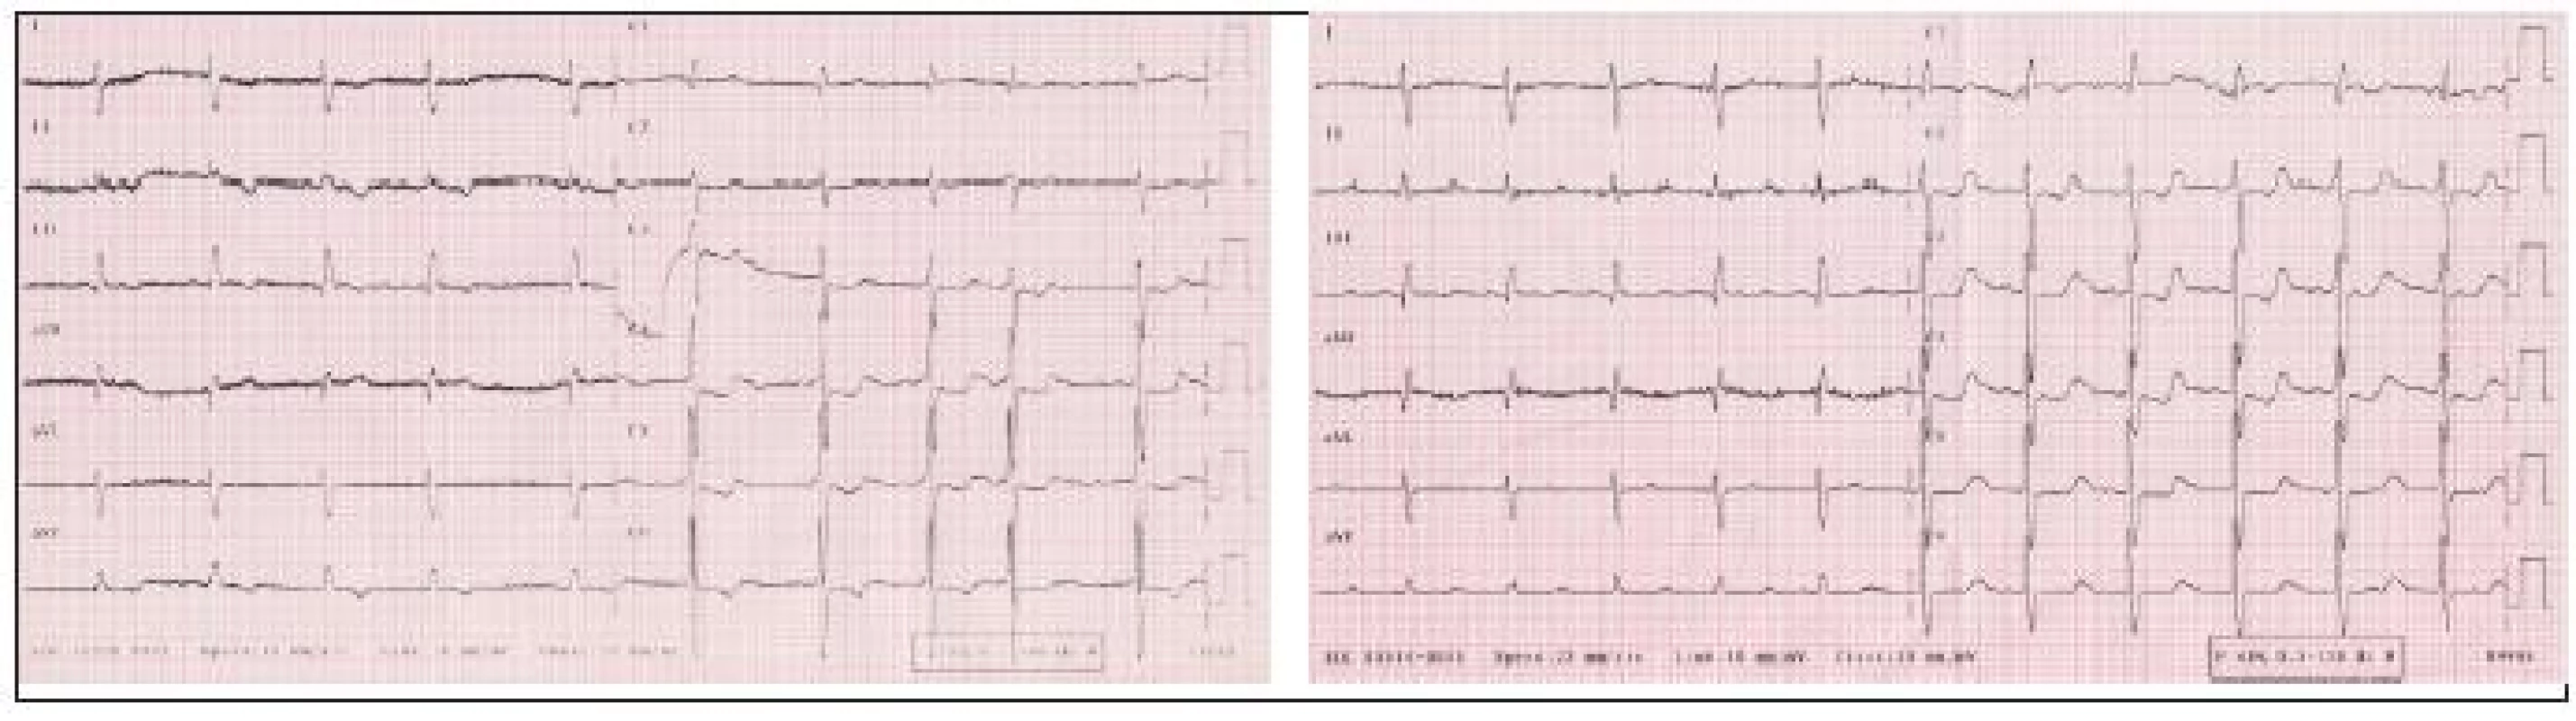 Vľavo: EKG z roku 2003, pravotyp, známky preťaženia pravého srdca, vpravo: EKG z roku 2005, oproti nálezu z roku 2003 v hrudných zvodoch progresia hypertrofi e a preťaženia pravej komory srdca.